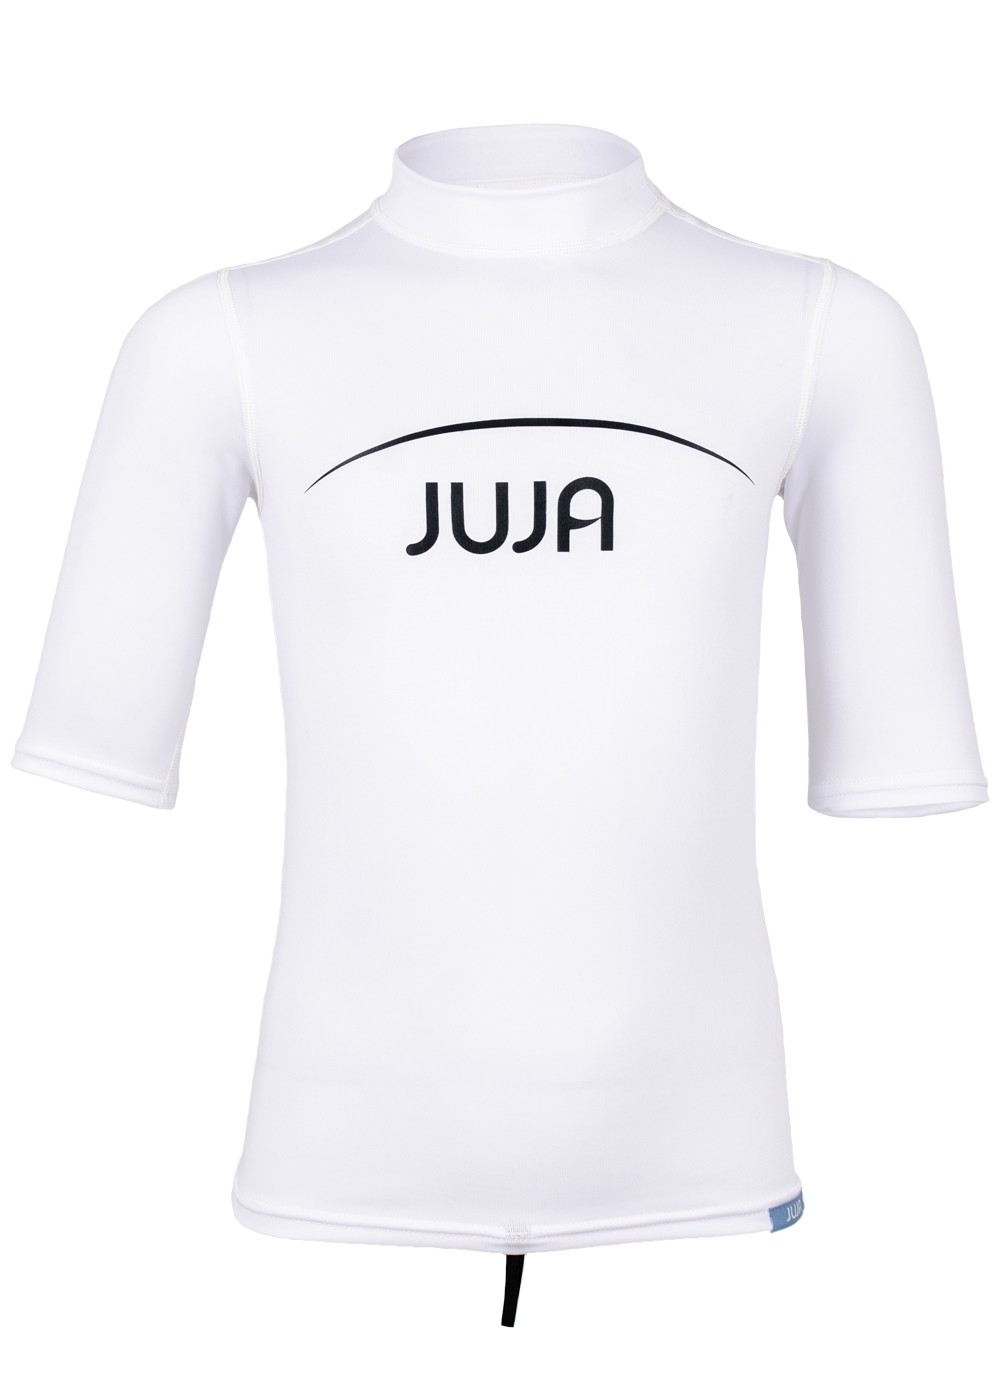 JuJa - UV-Badeshirt für Kinder - Kurzärmlig - Weiß